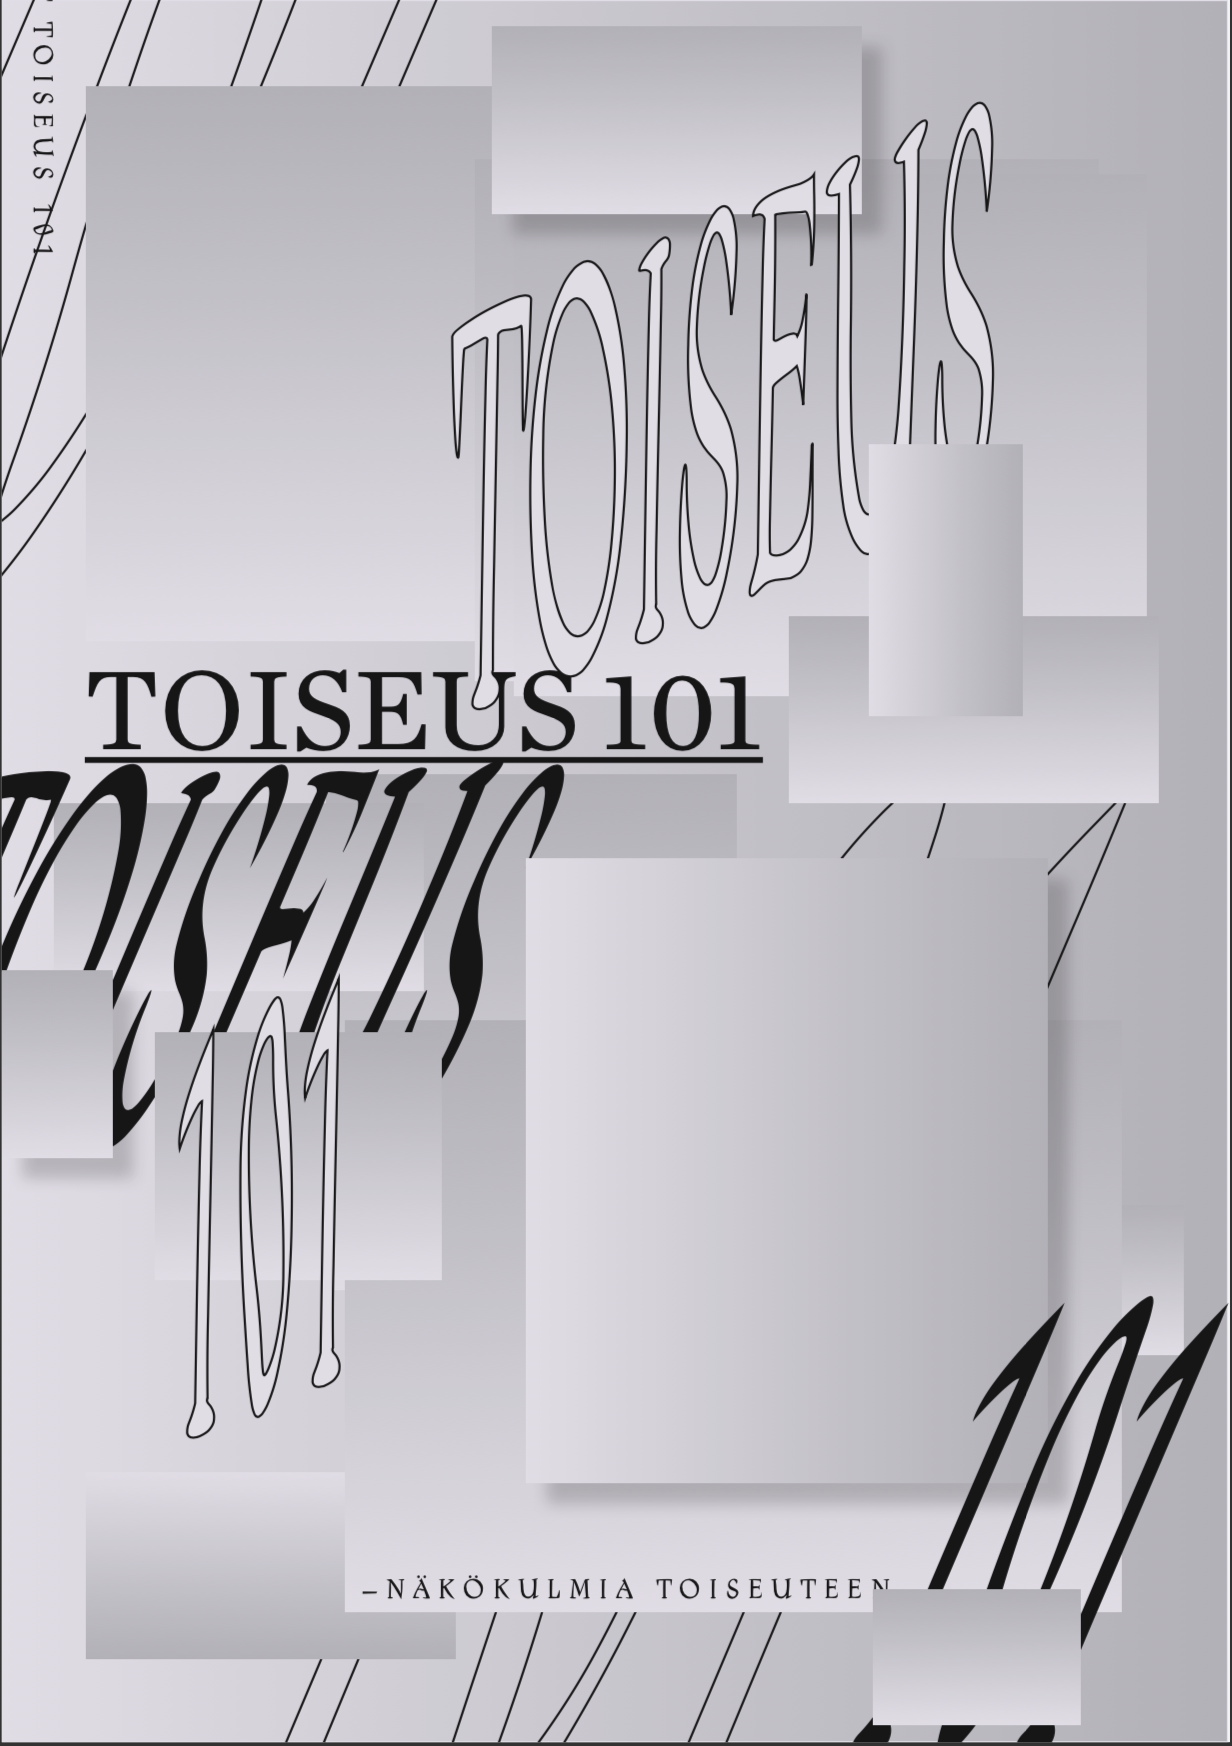 picture of the toiseus 101 - publication